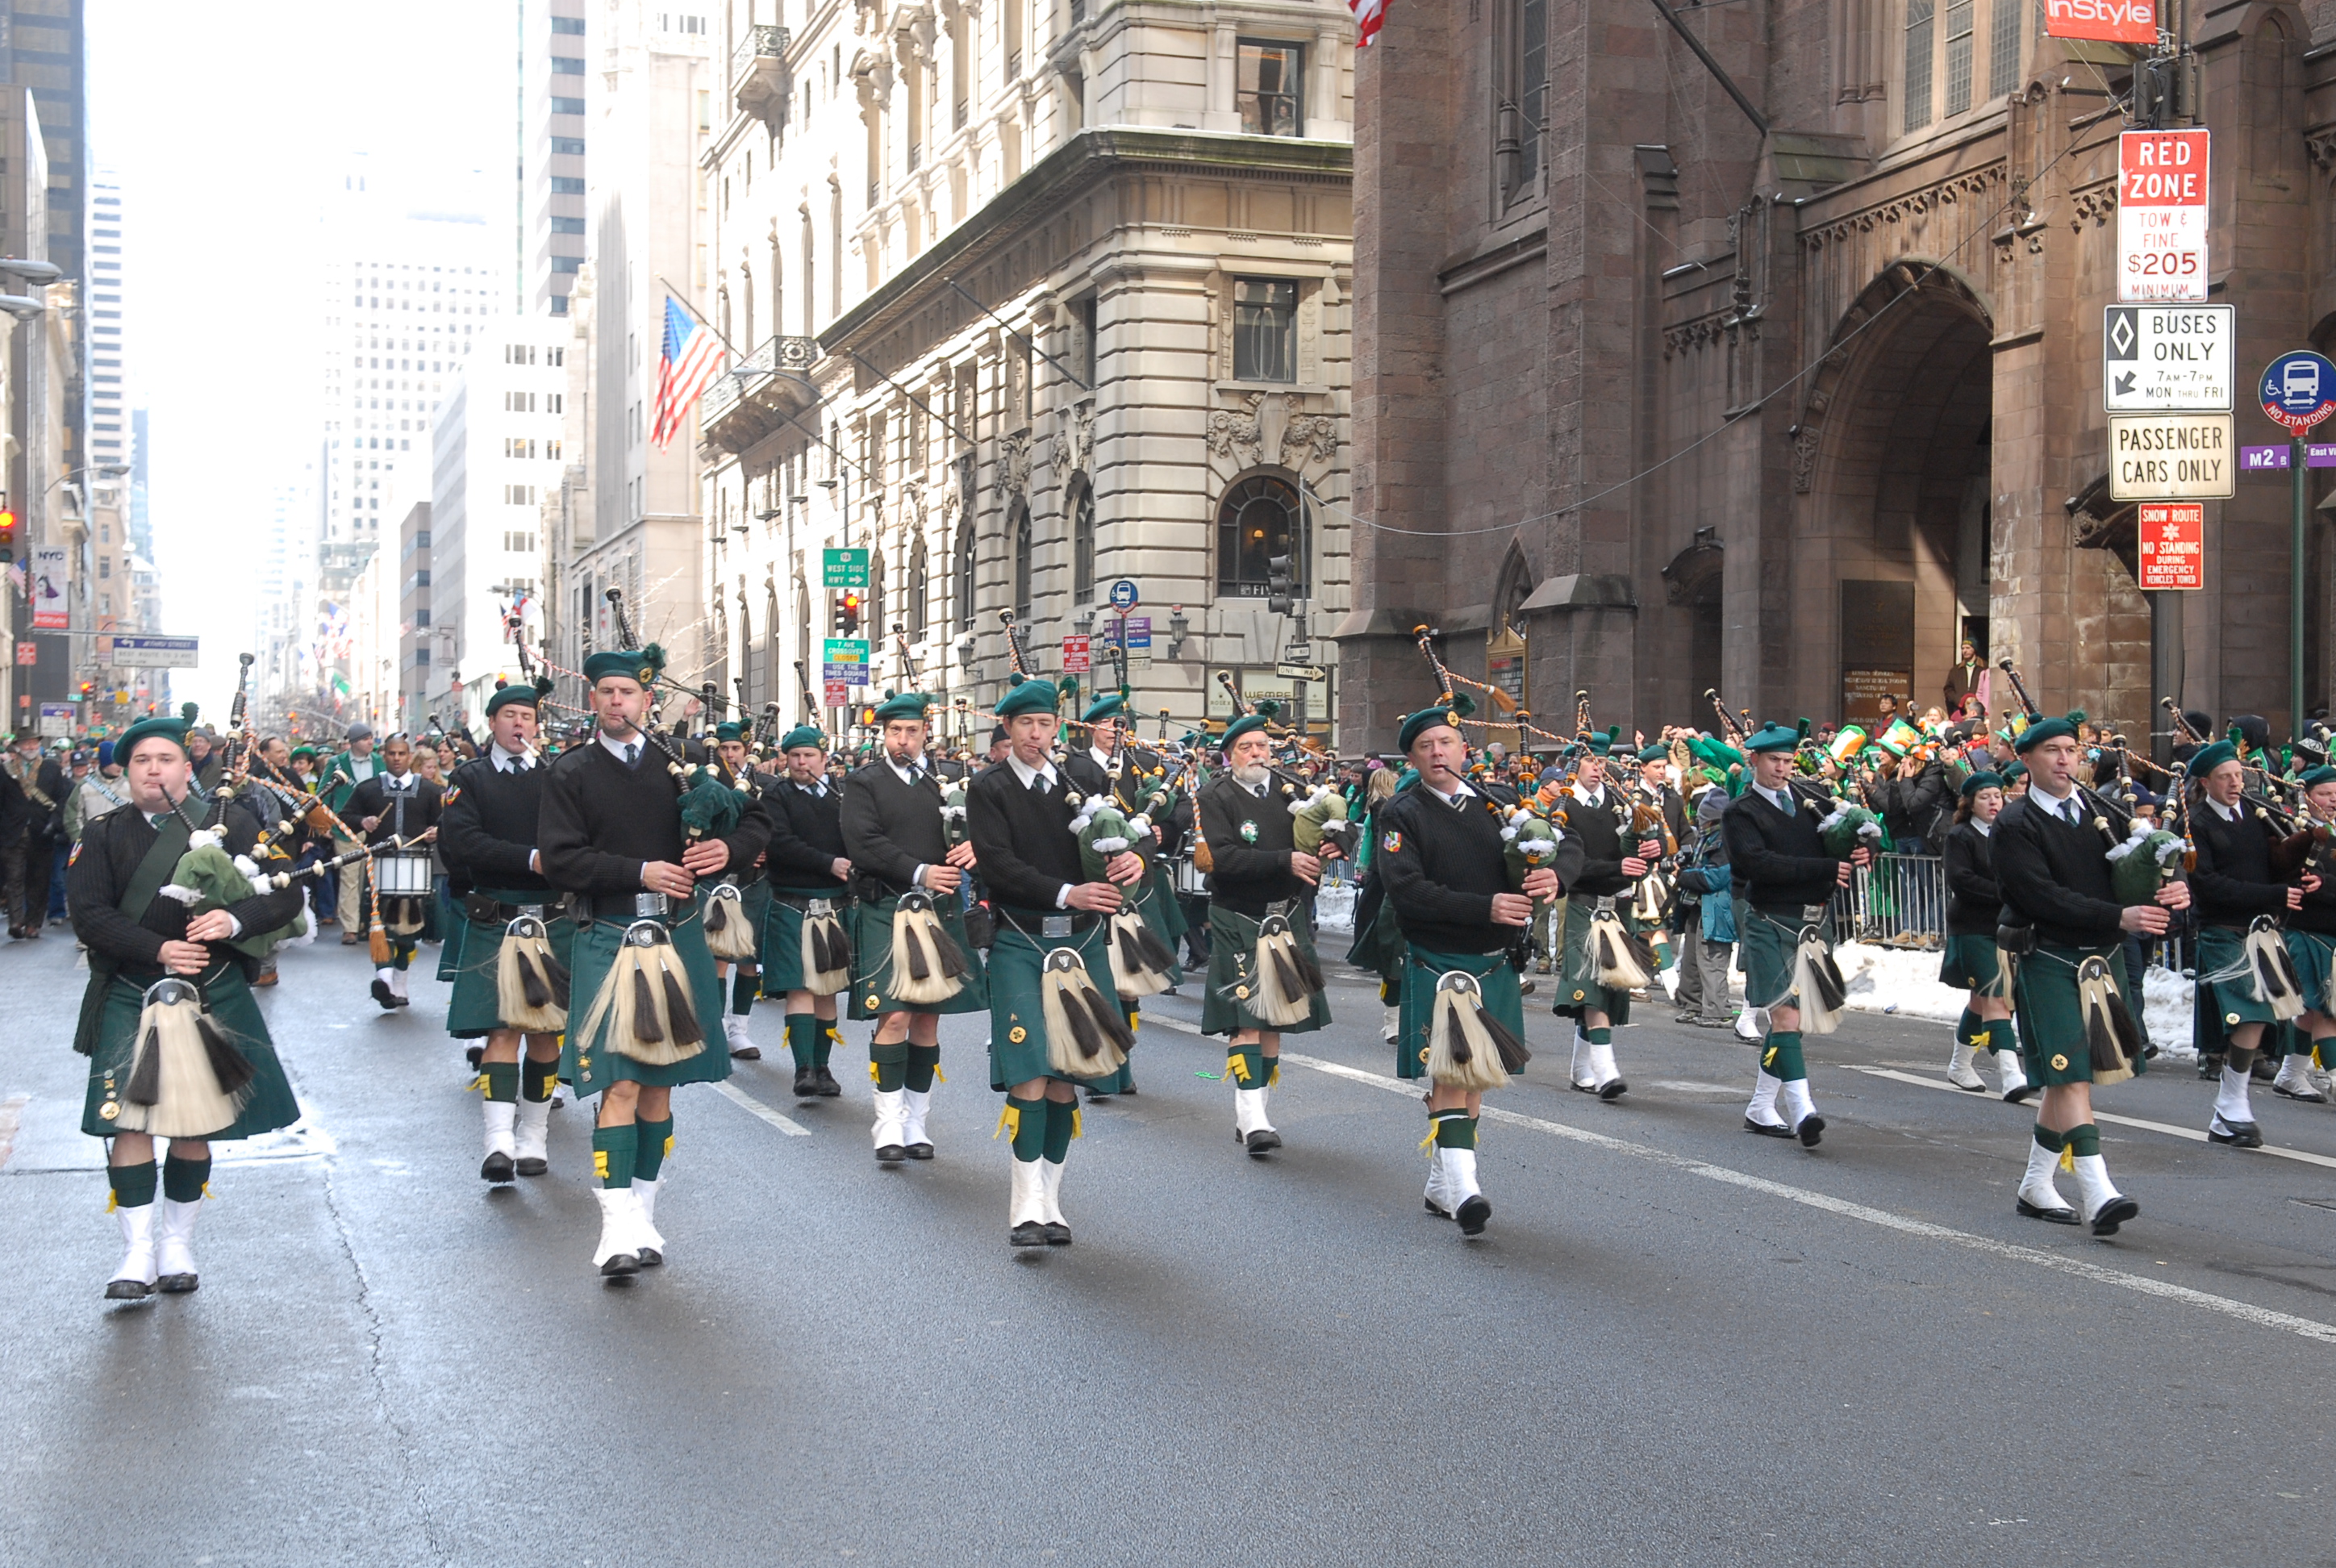 St. Patricks Day Parade in NYC 2010 « CitySights NY Blog